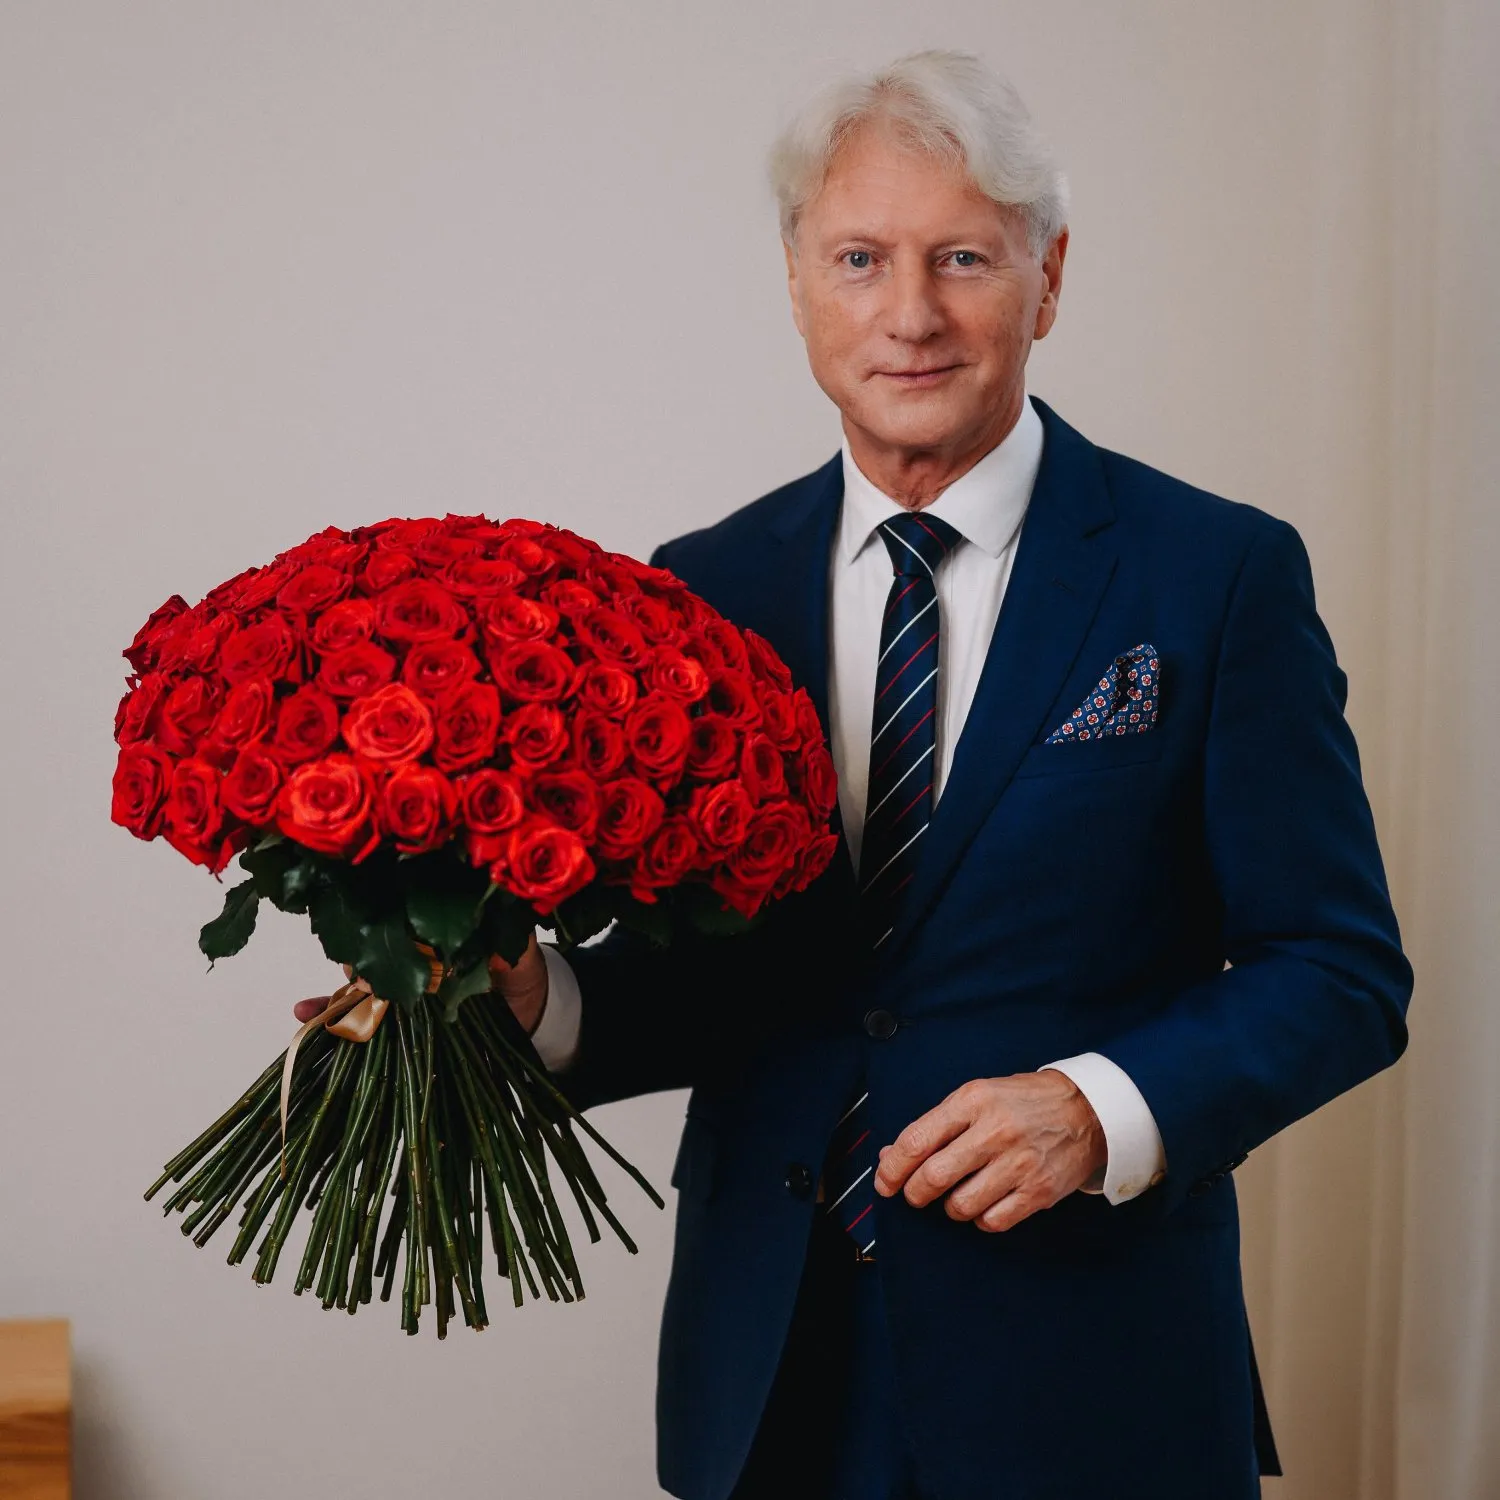 Nejkrásnější přání k narozeninám pro ženu s dárekem v podobě kytice rudých růží